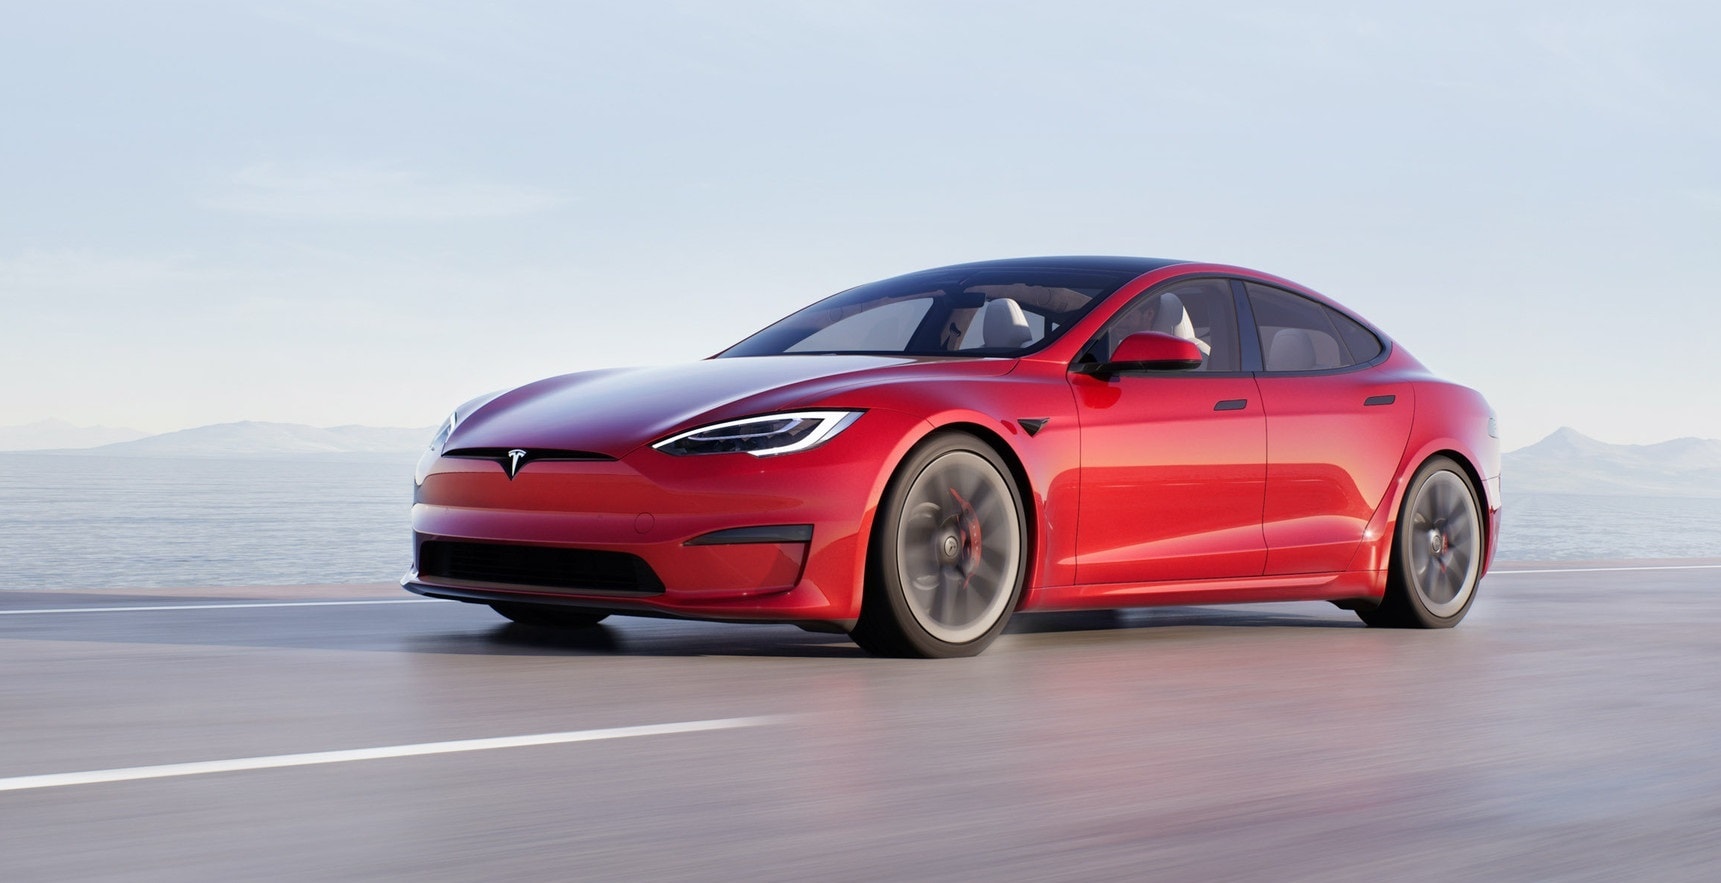 Vista lateral del Tesla Model S en movimiento, destacando su diseño aerodinámico.